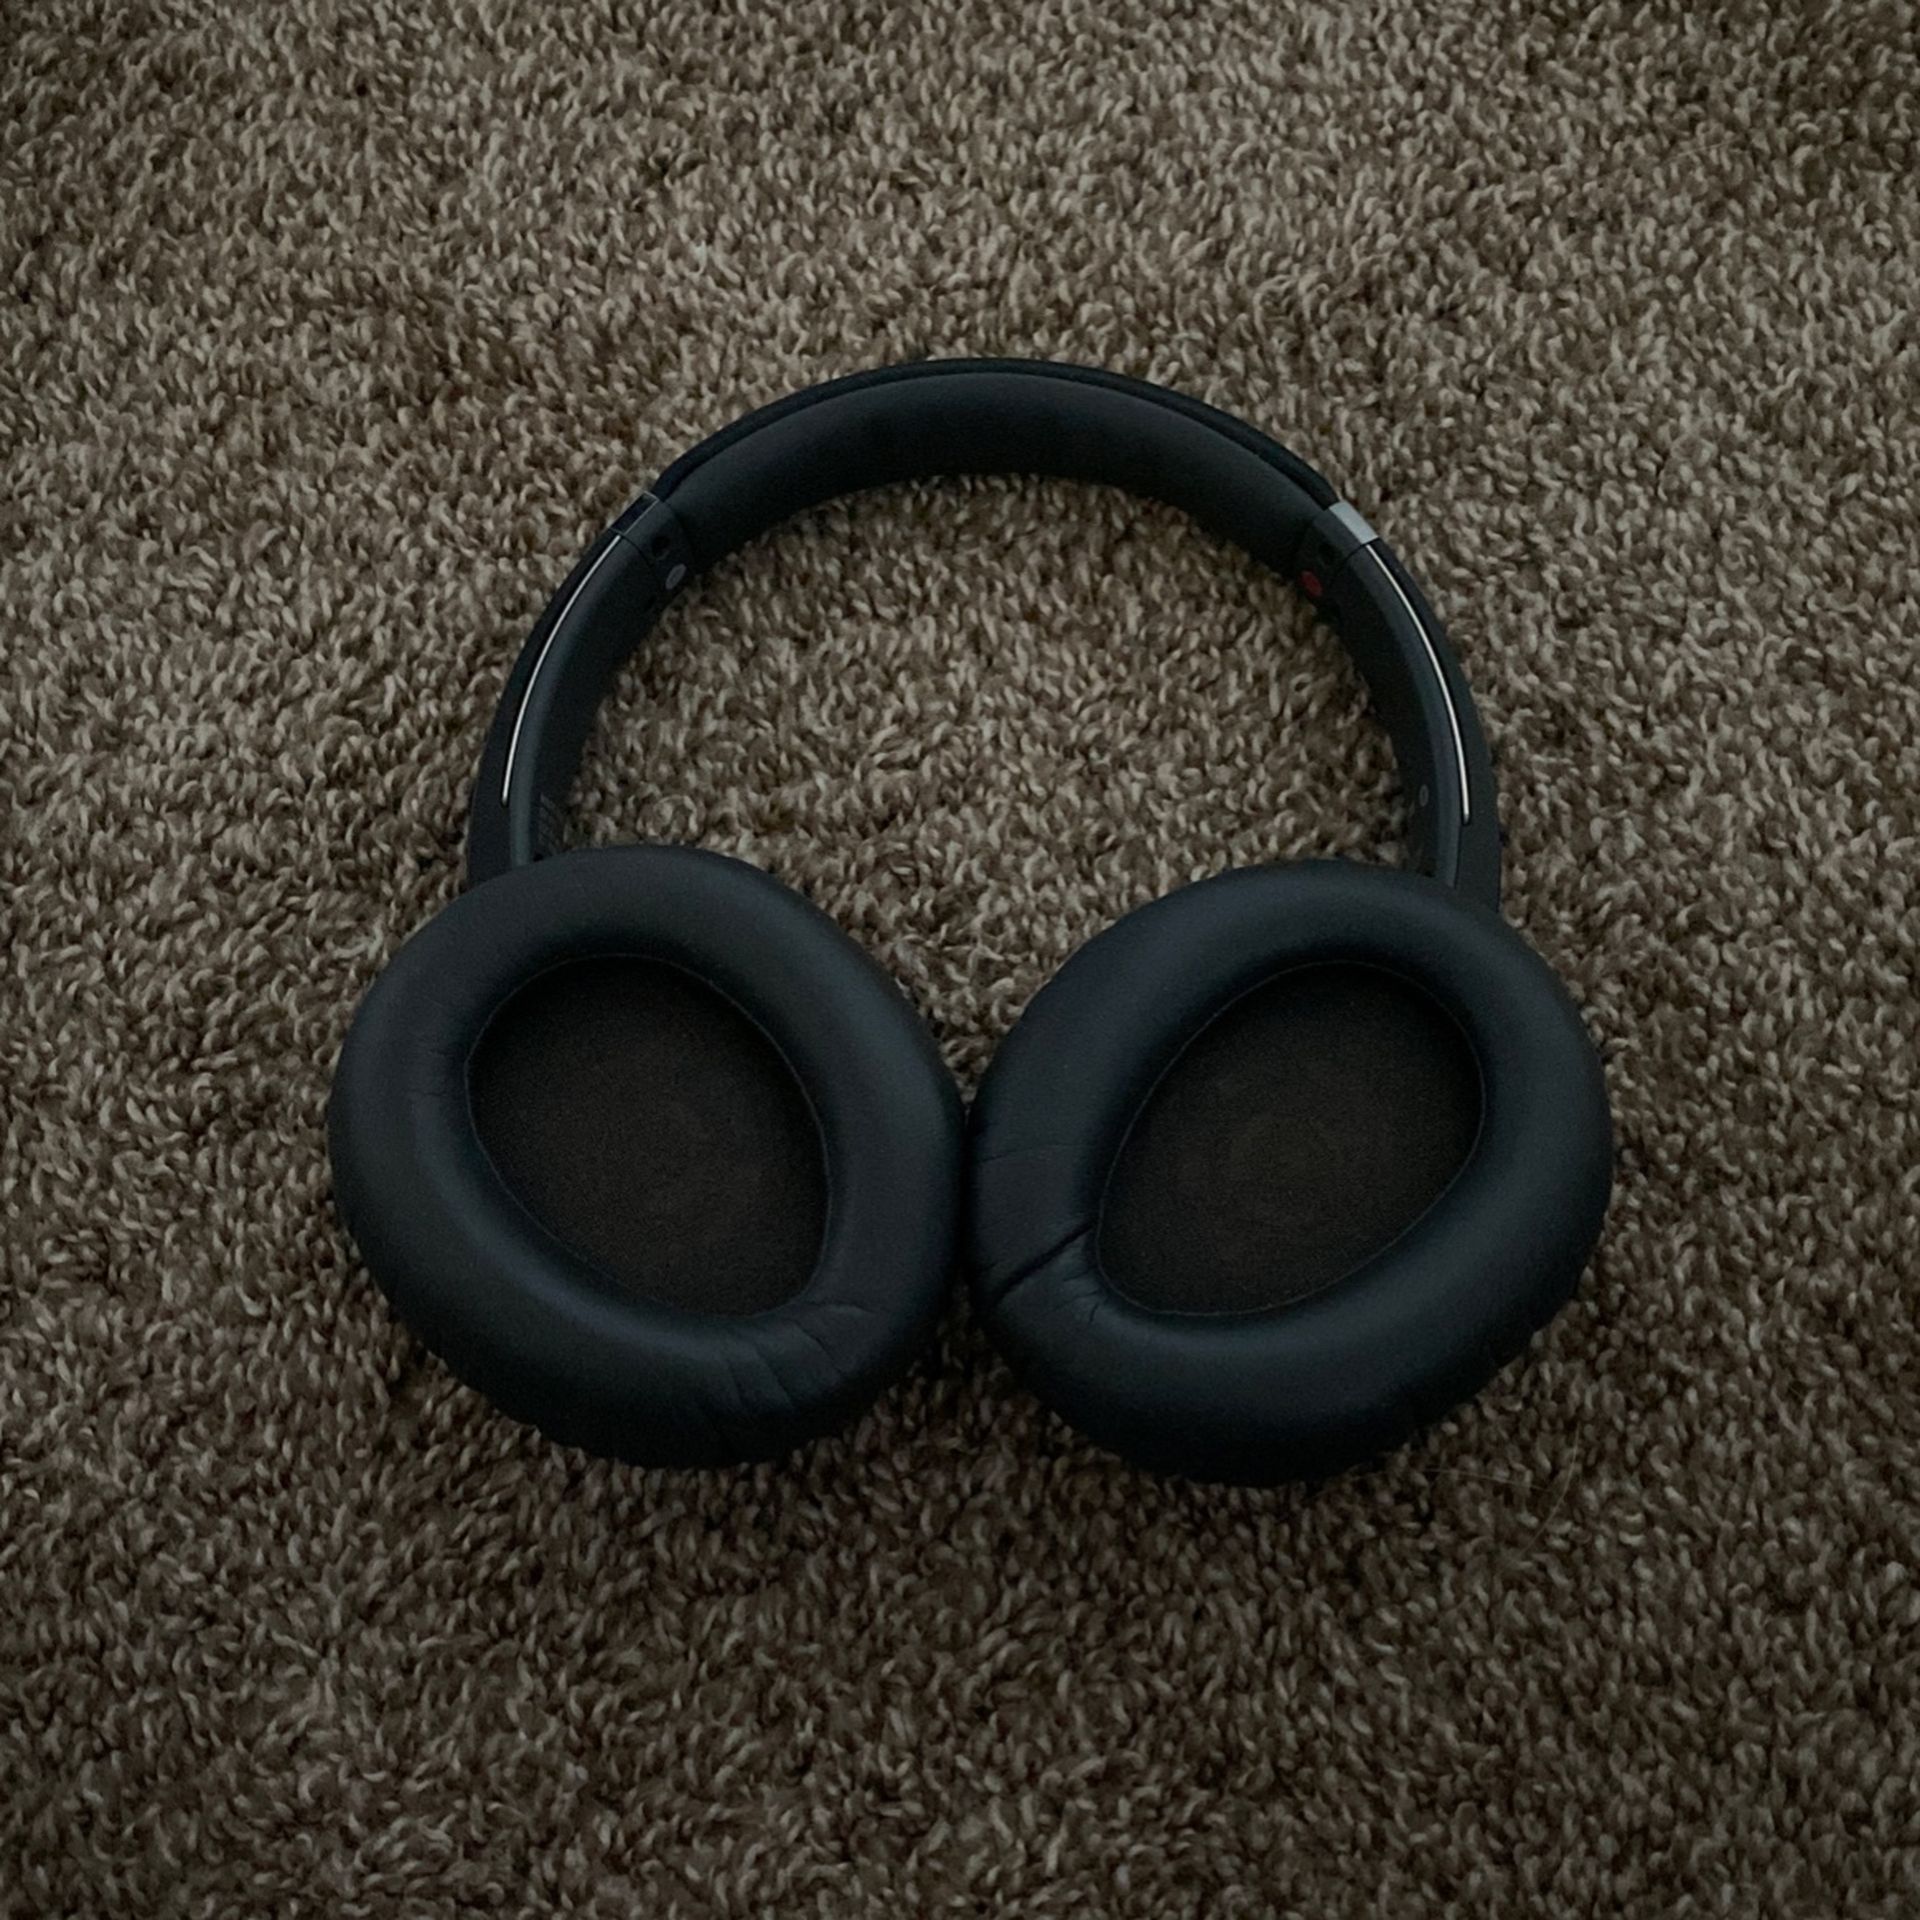 Sony Wireless headphones